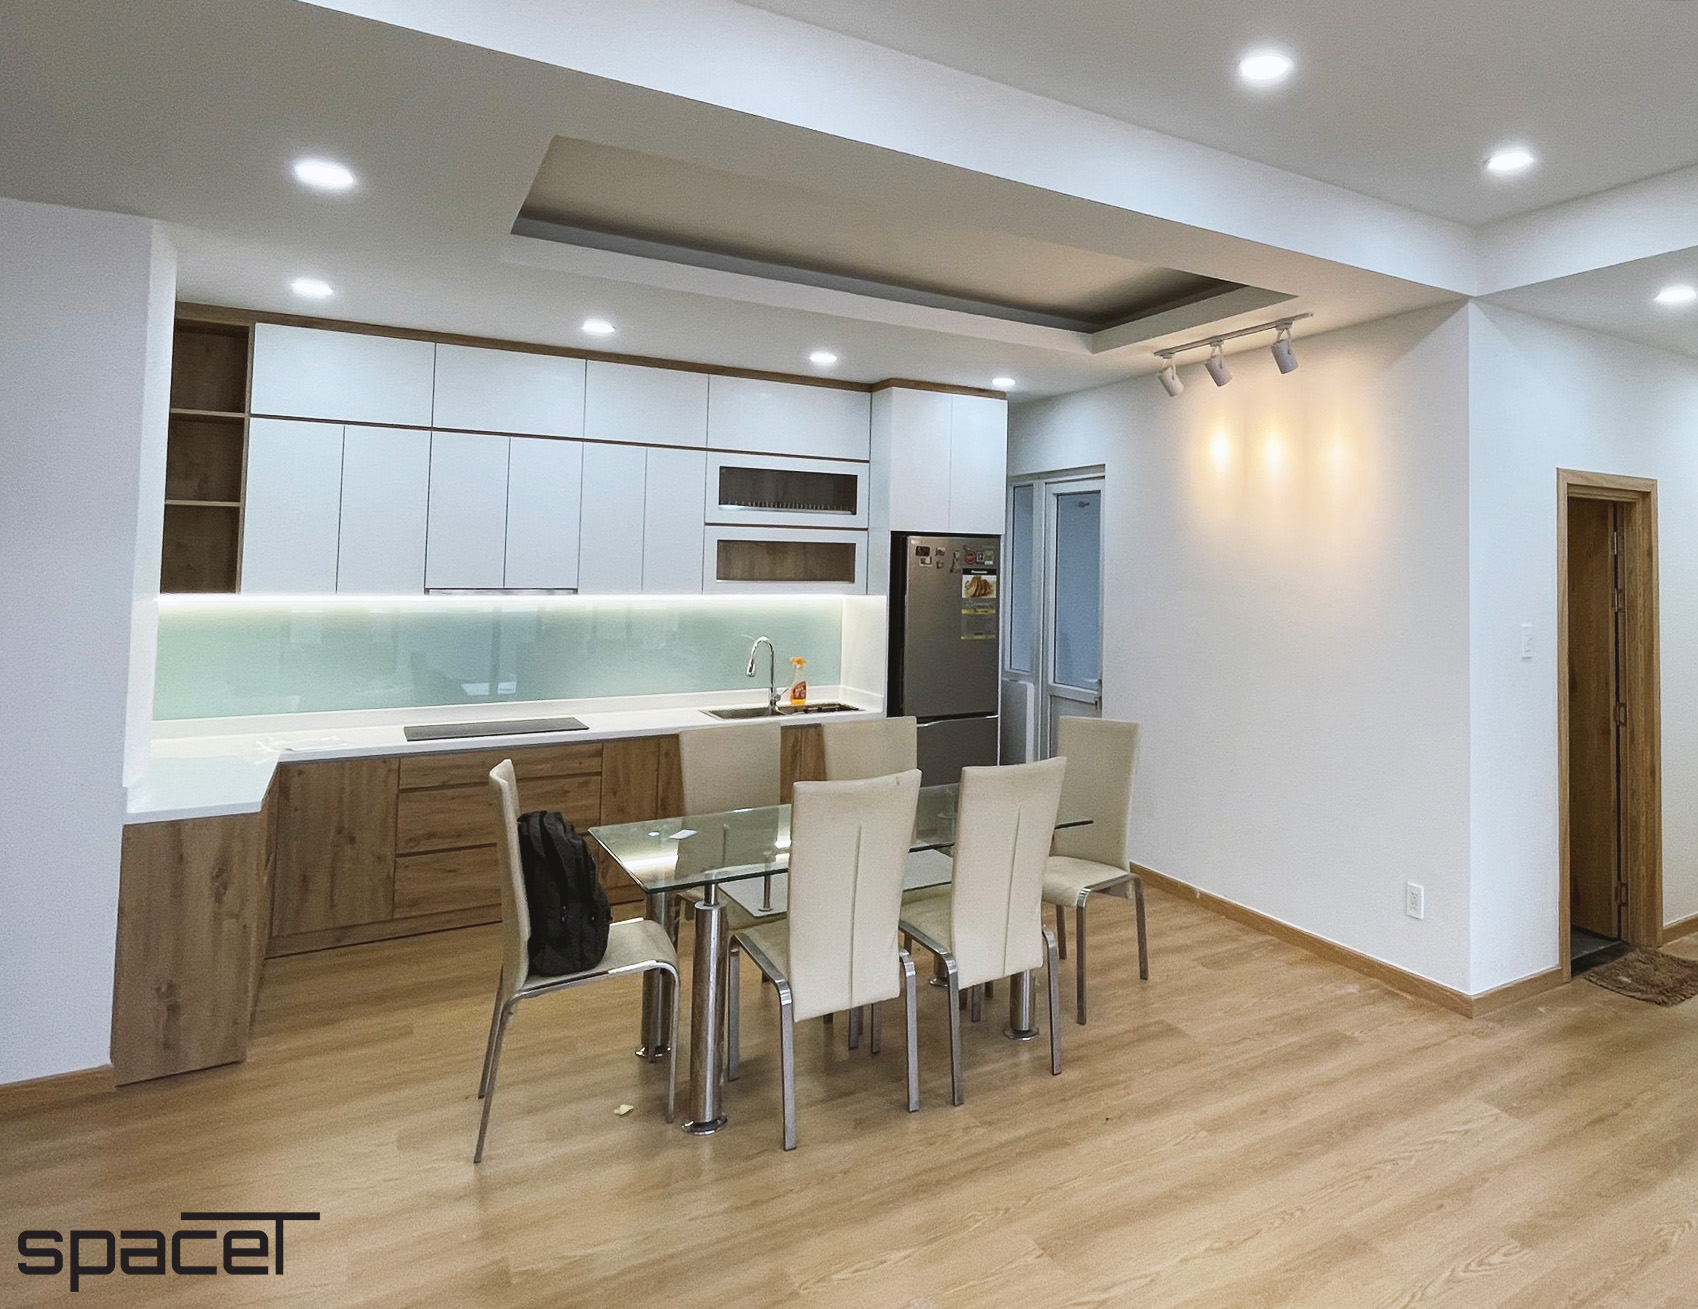 Phòng ăn, phòng bếp, phong cách Hiện đại Modern, hoàn thiện nội thất, căn hộ chung cư Minh Thành